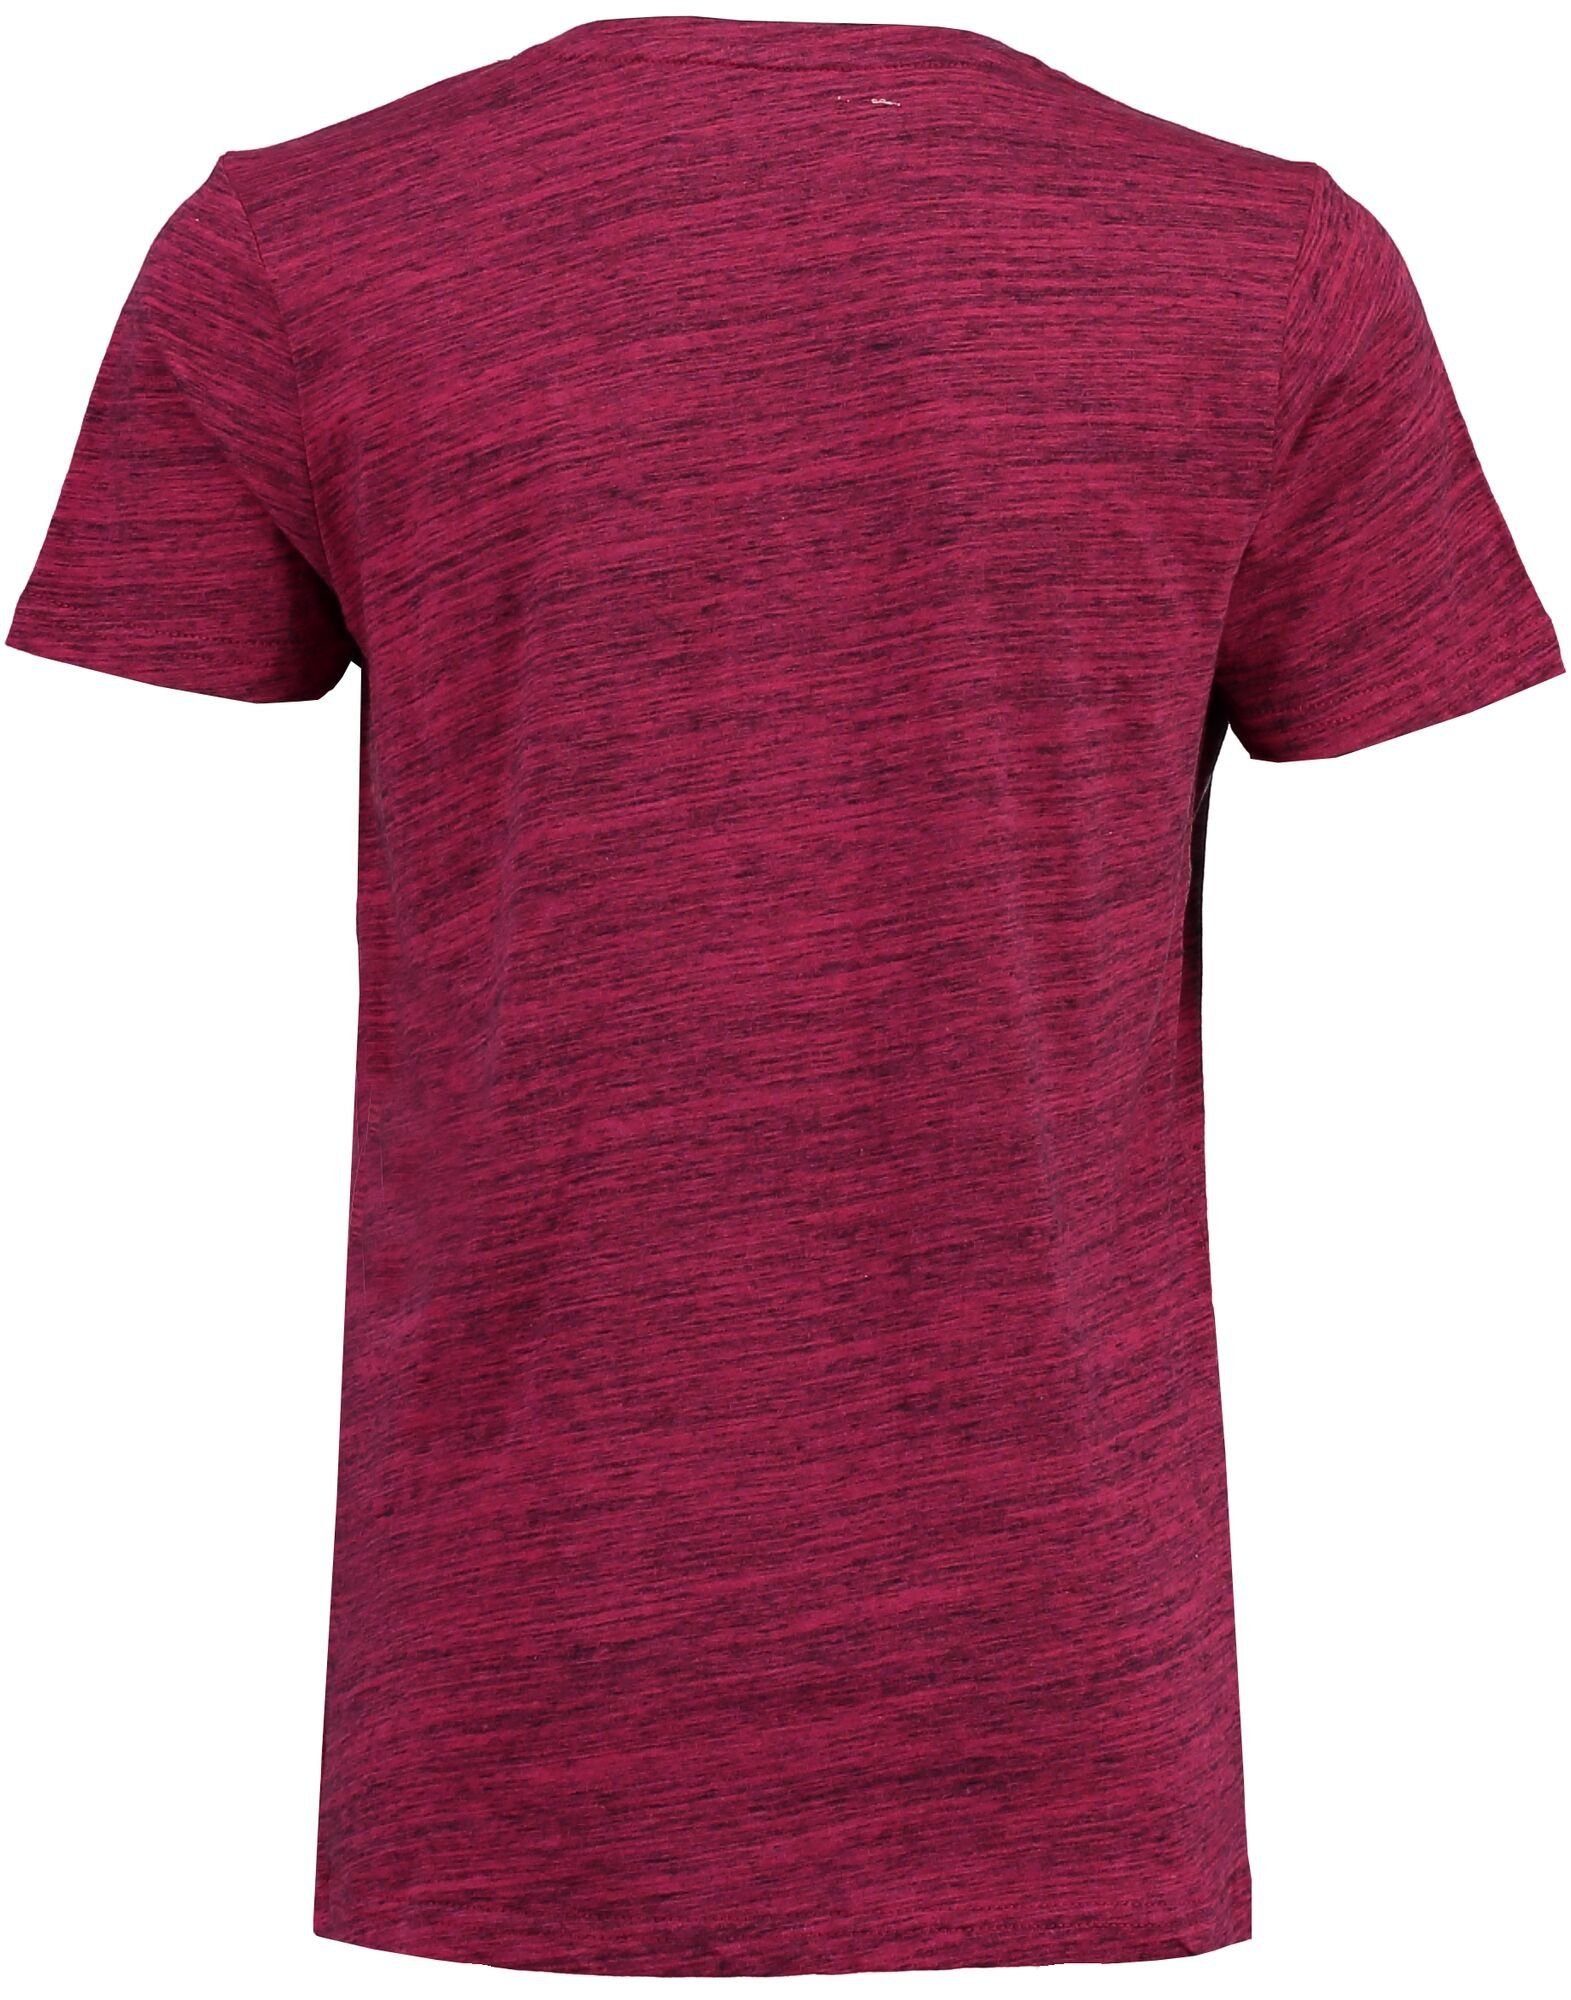 Garcia T-Shirt Herren online kaufen OTTO 